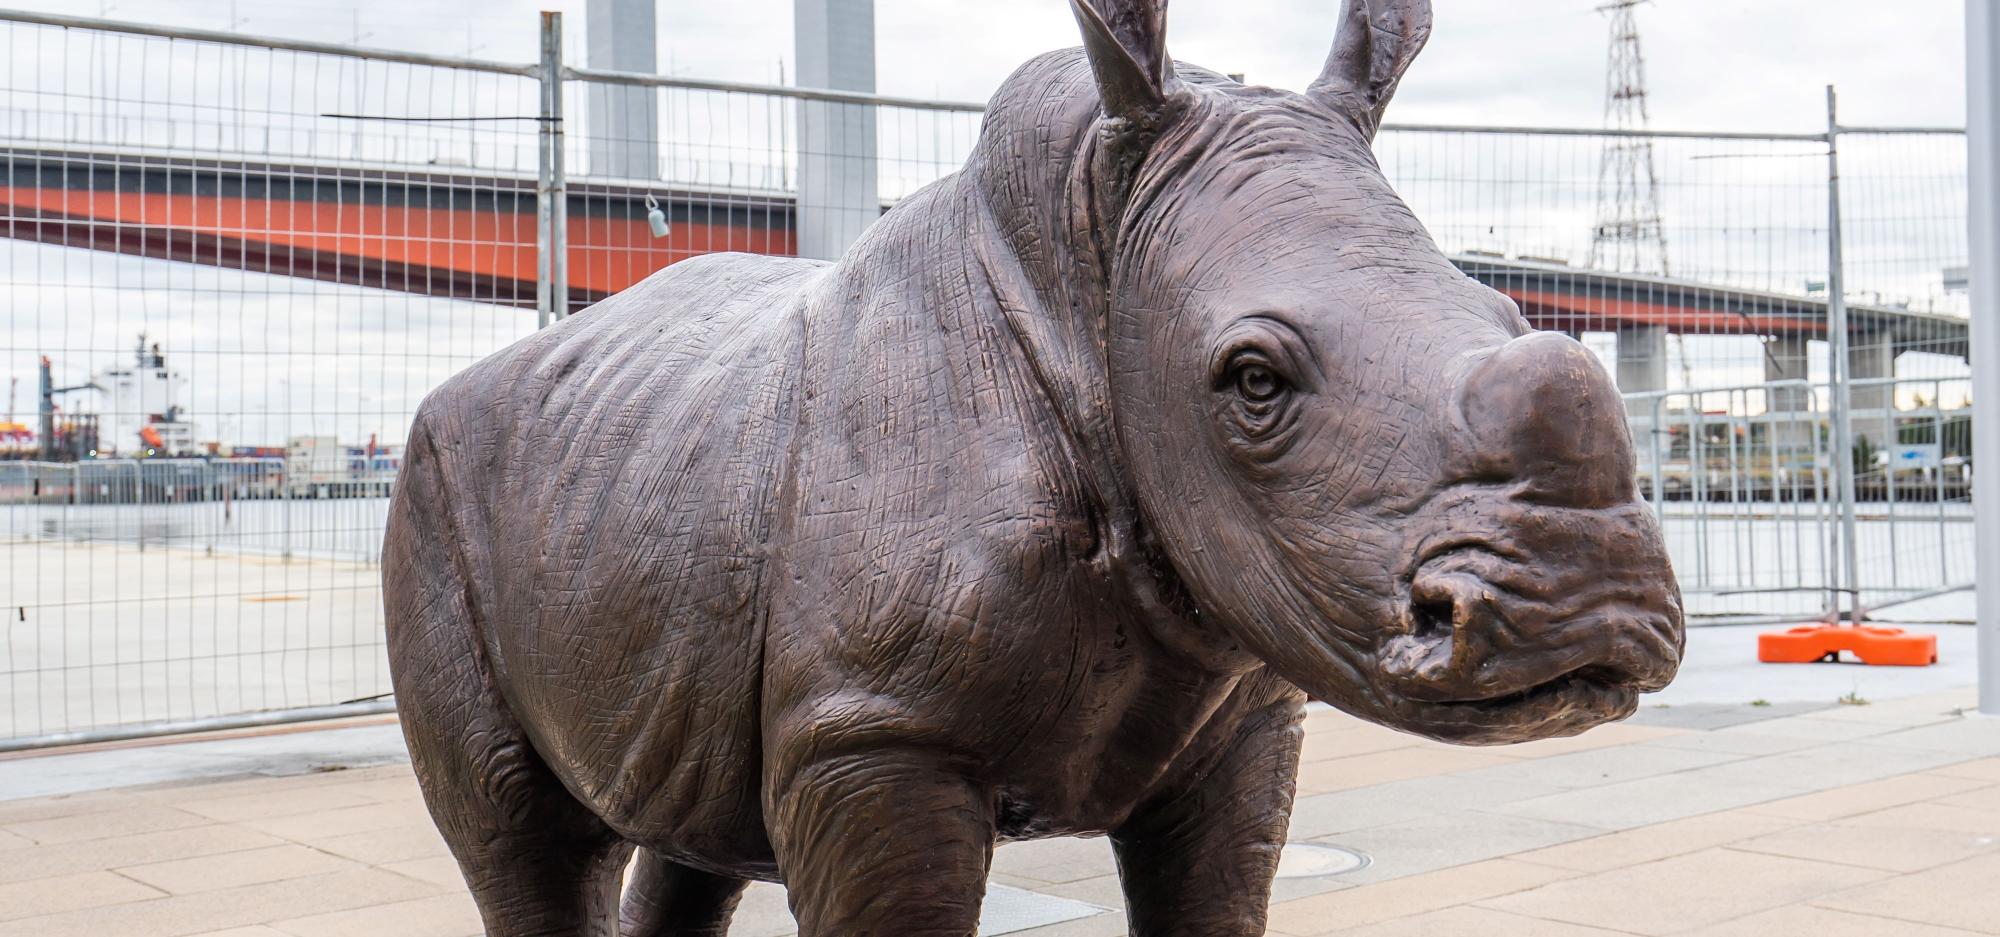 Statue of wild baby rhino